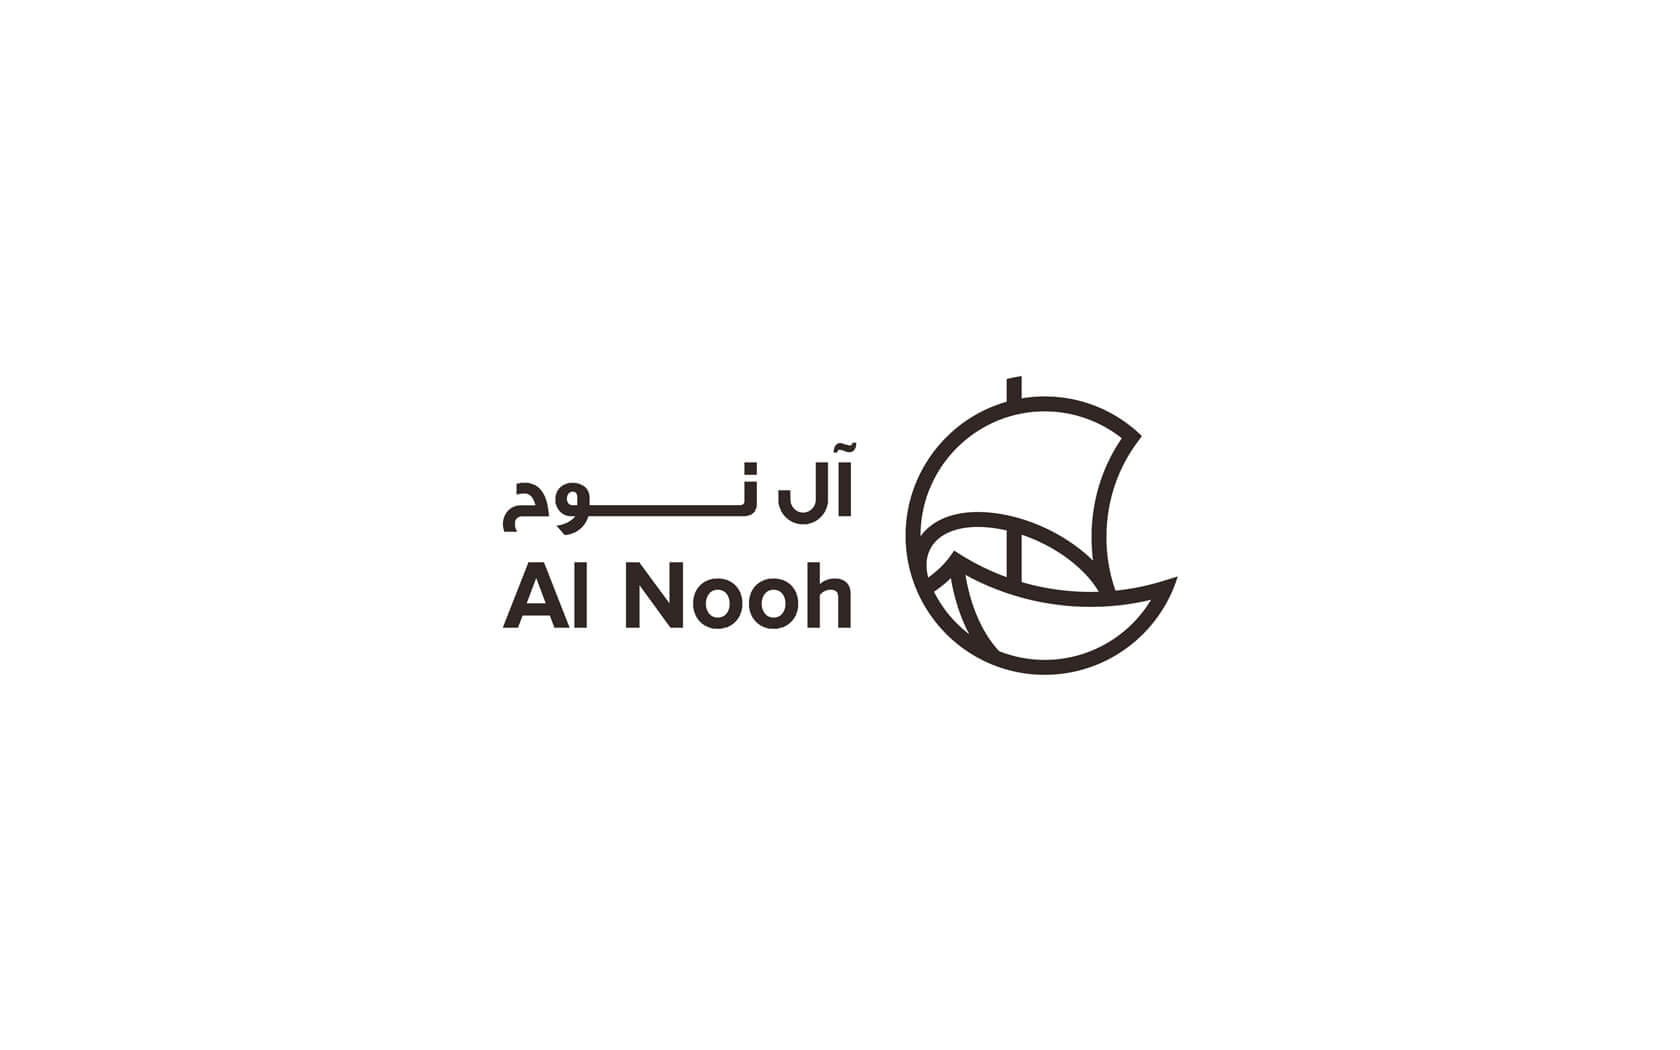 Al Nooh. Brand logo in dark brown